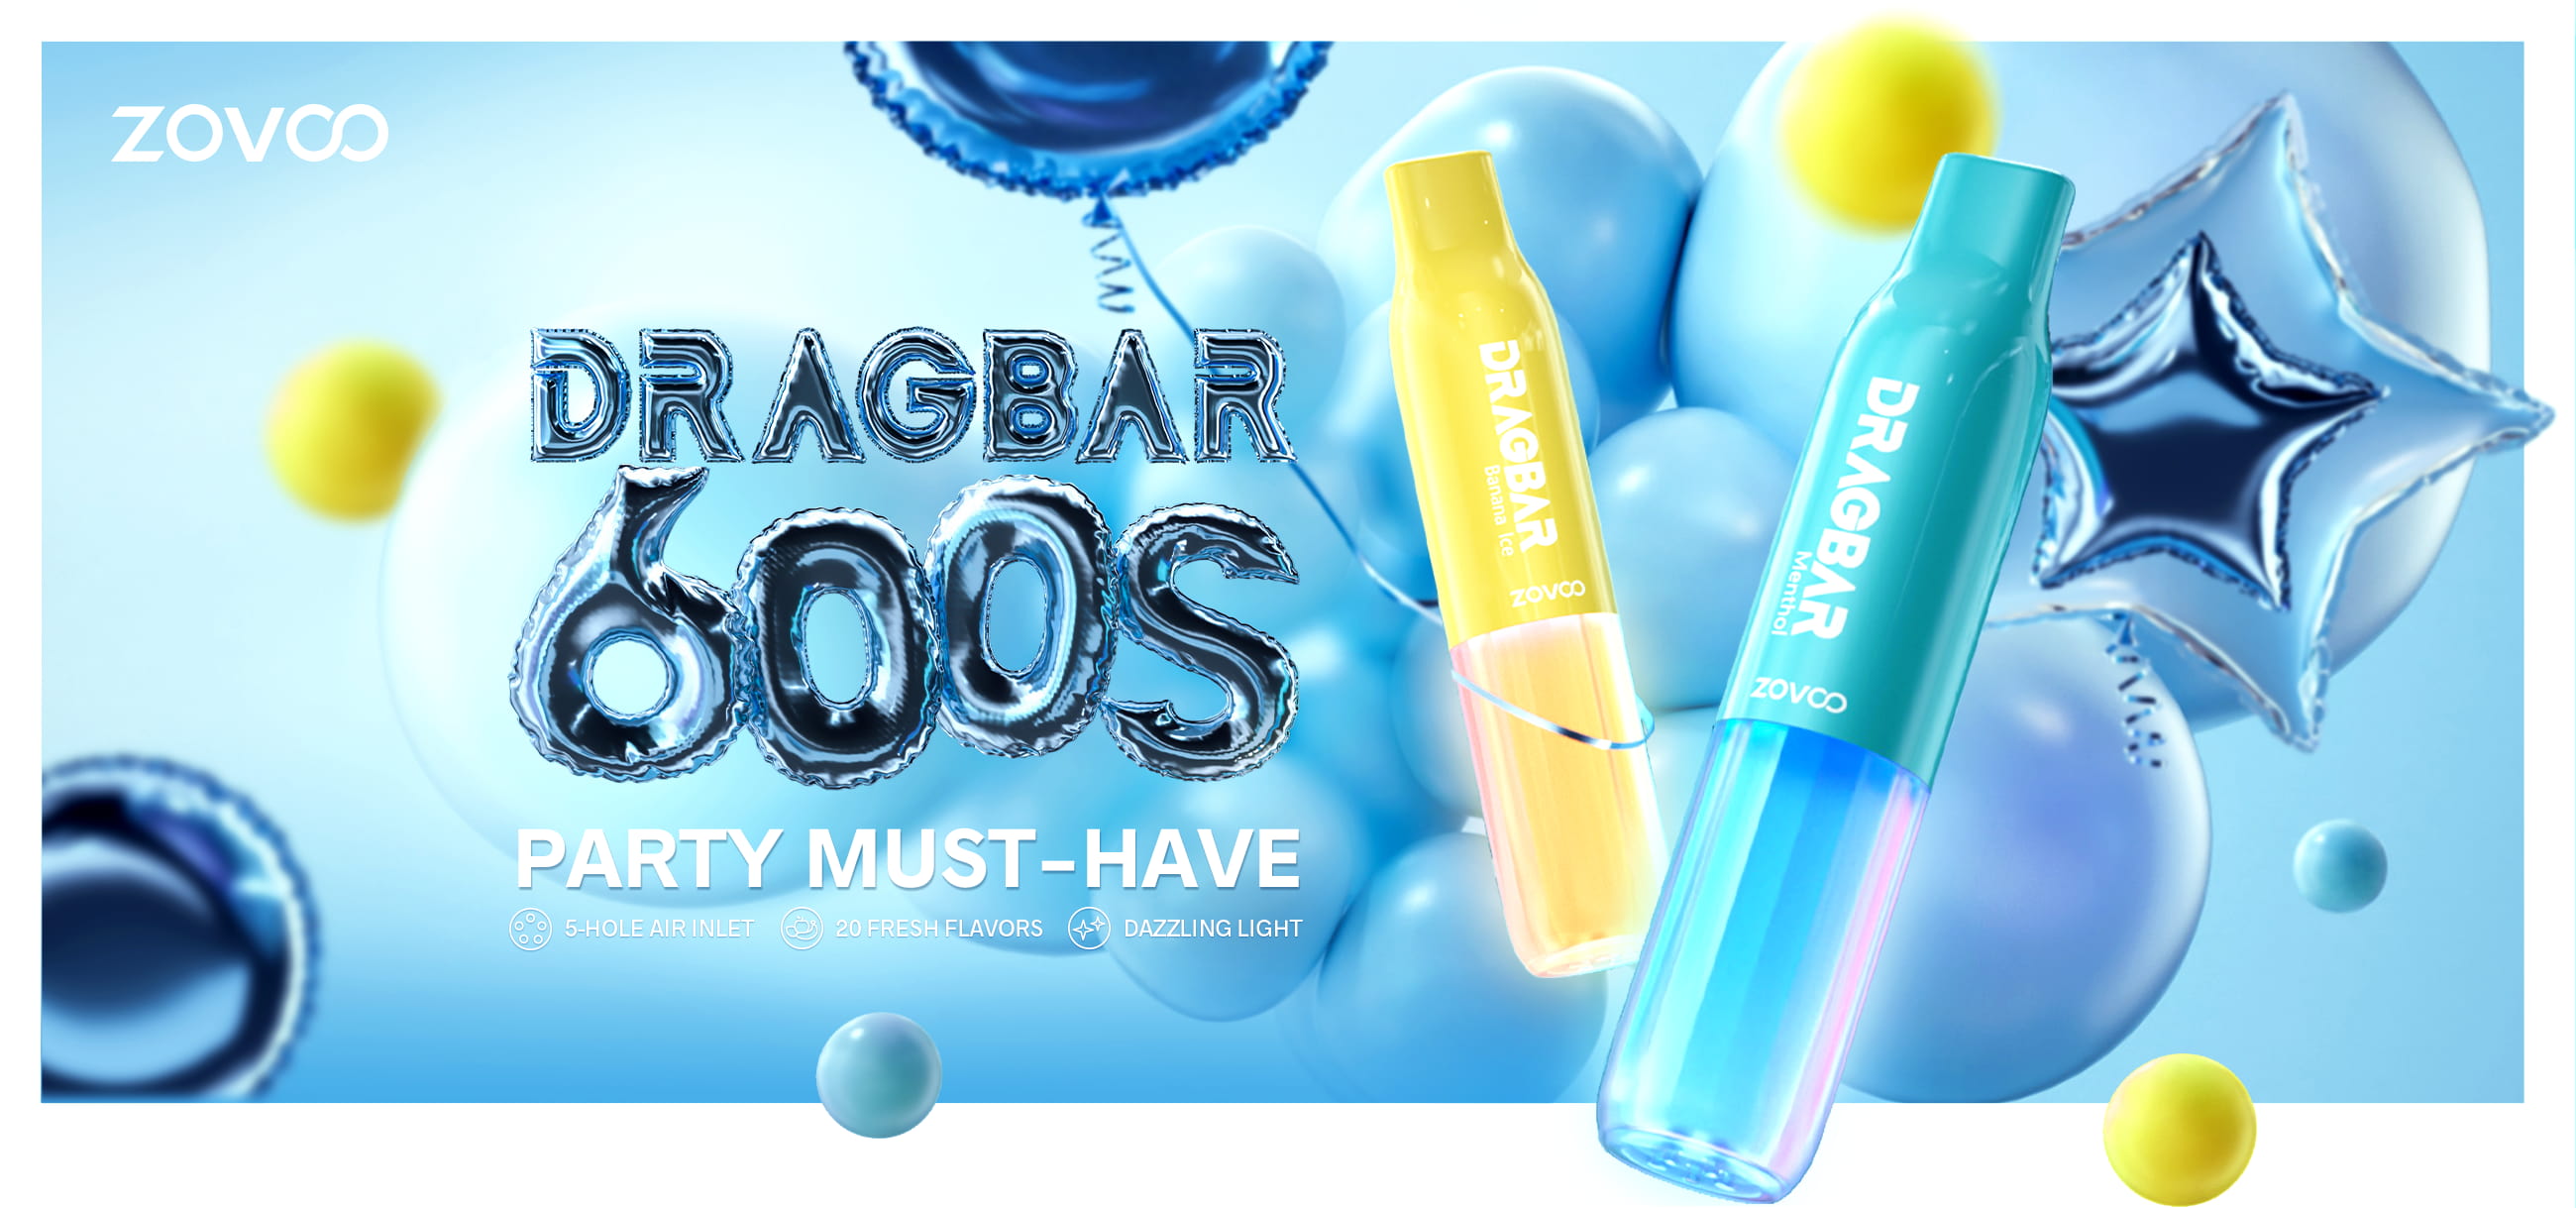 Drag Bar S600